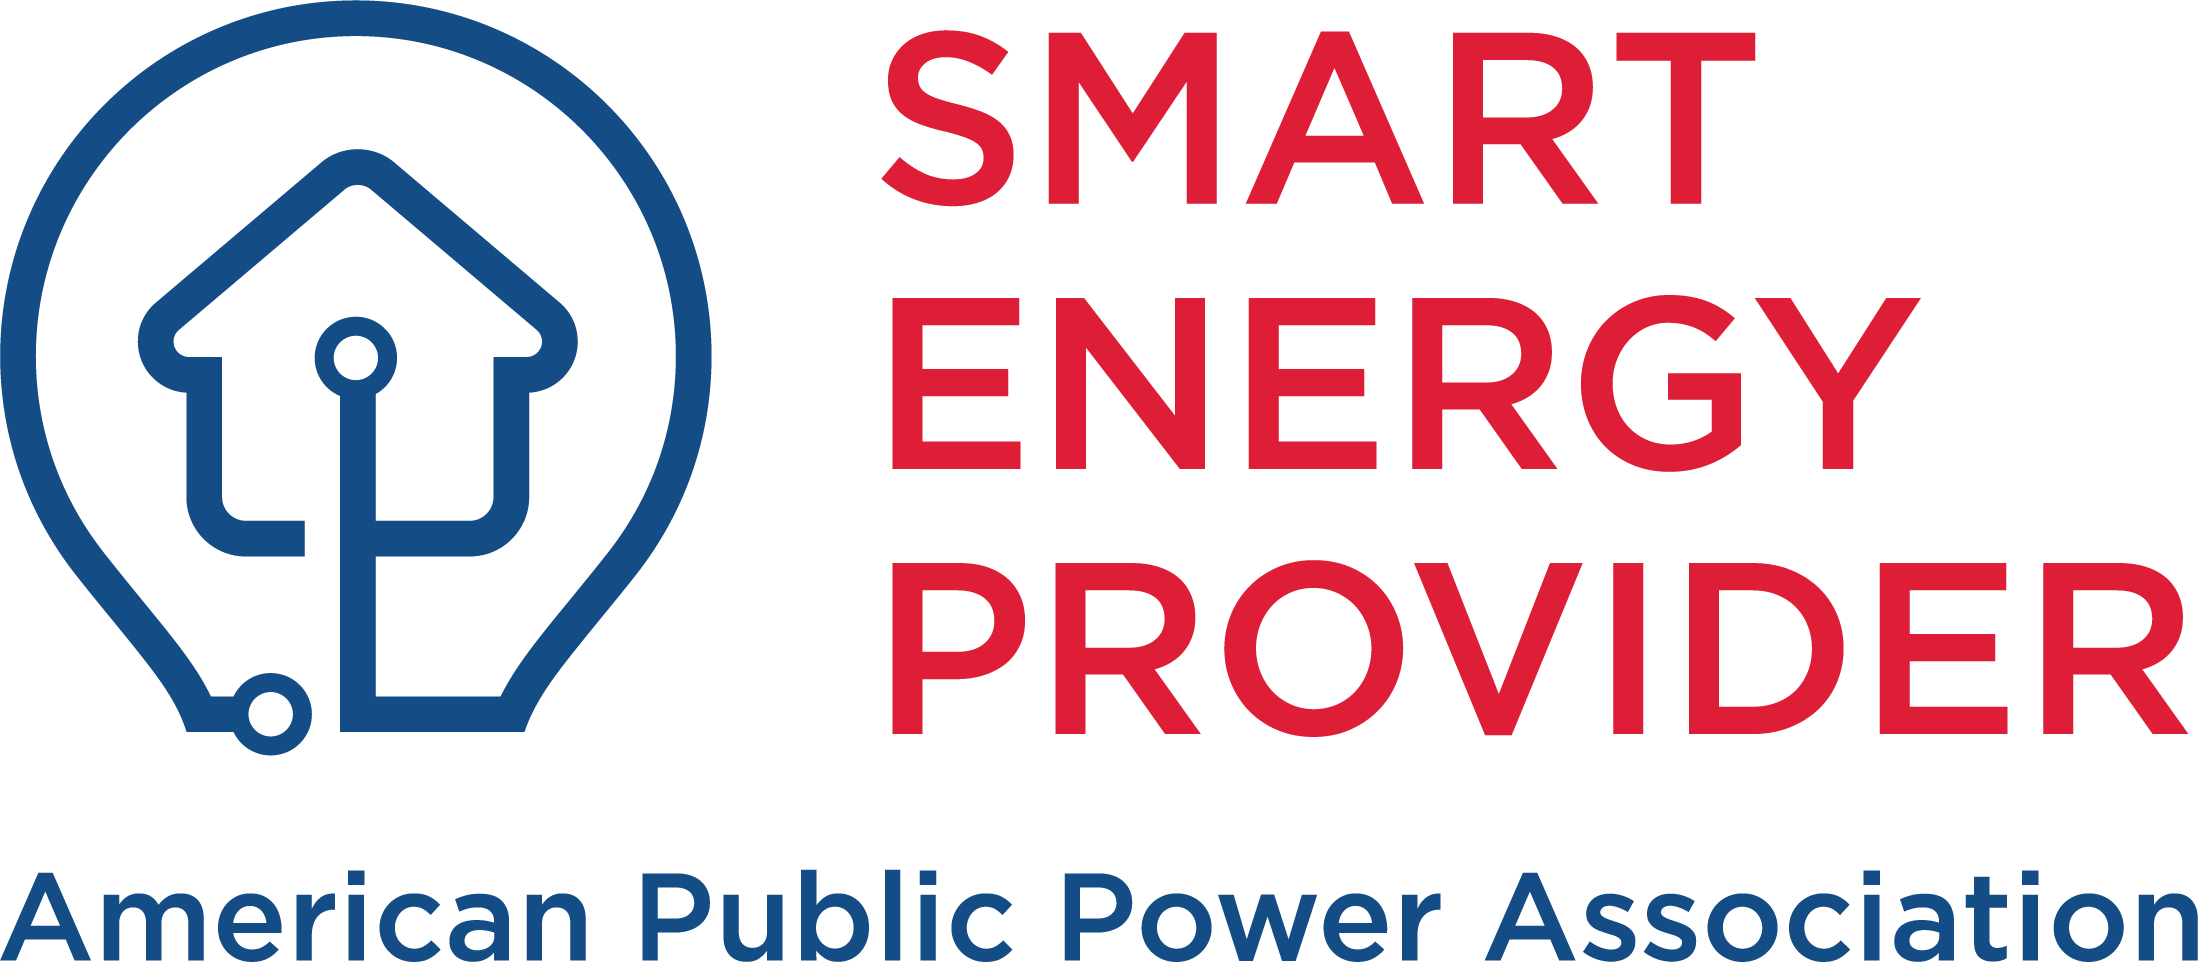 Smart Energy Provider